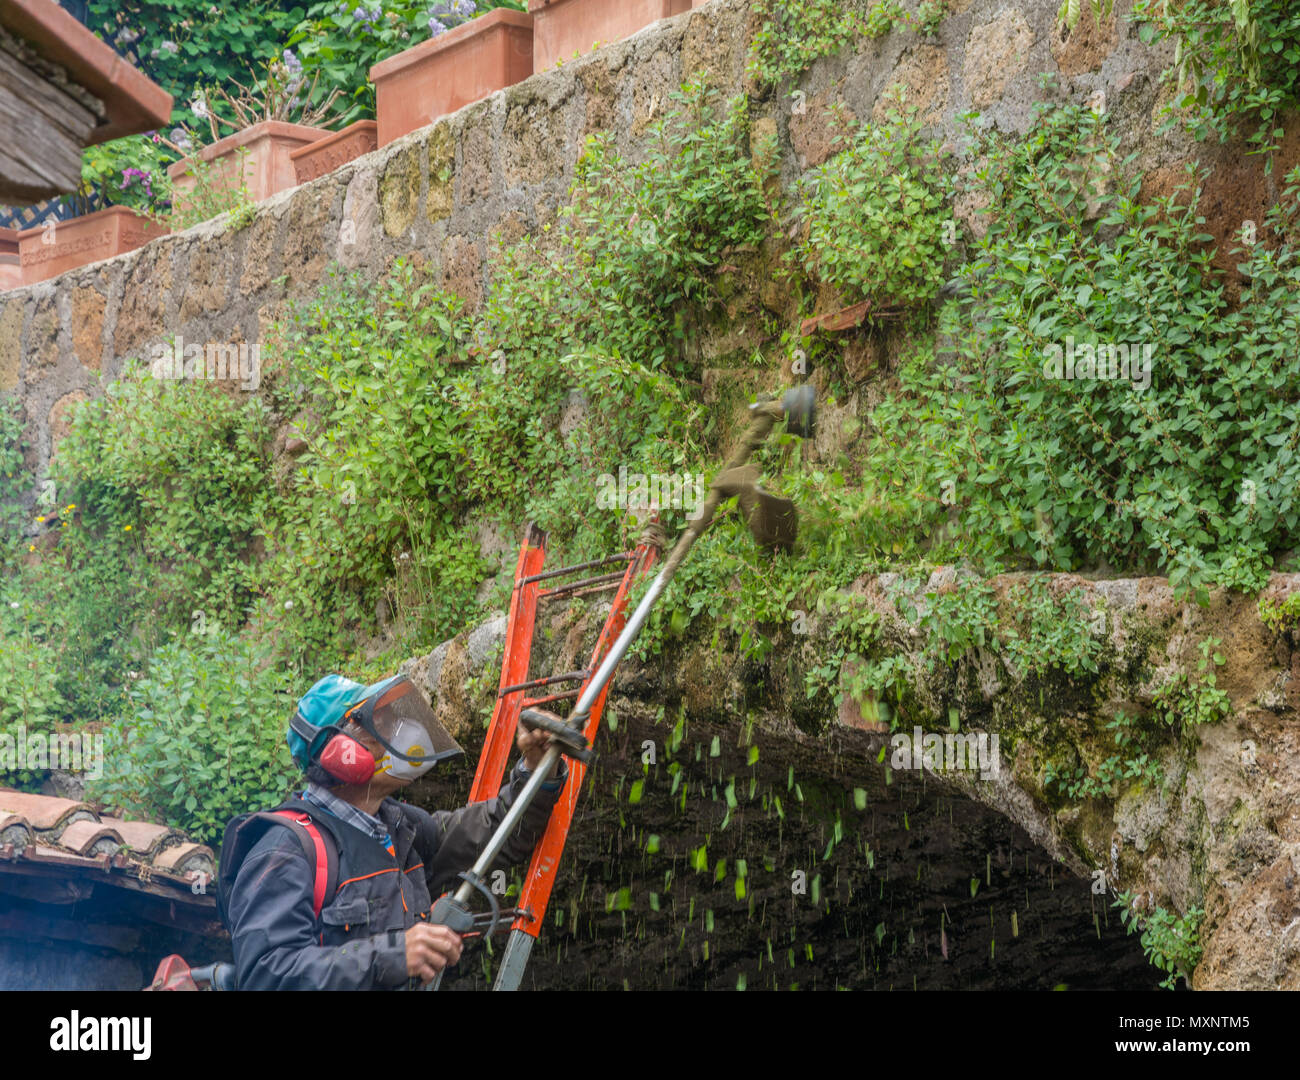 Tuscania (Viterbo), Italien - 2. Mai 2018: die städtischen Gärtner mit STRIMMER in einer archäologischen Stätte in Tuscania, Italien Stockfoto